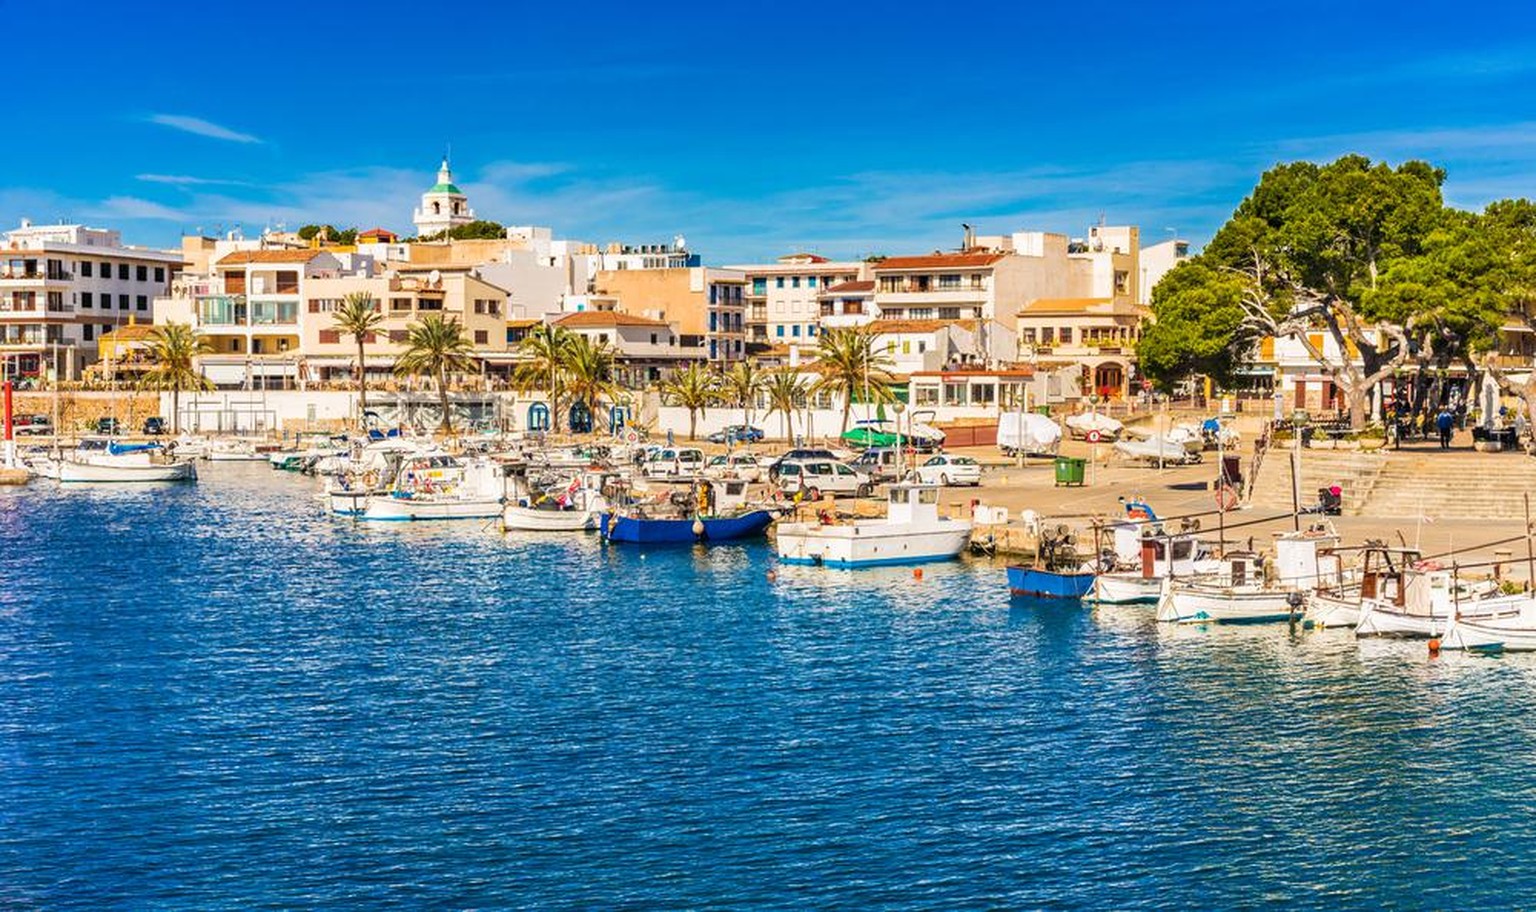 Das Fischerdorf Cala Ratjada an der Ostküste von Mallorca präsentiert sich wie zu den Anfängen des Tourismus in den 1960er-Jahren.